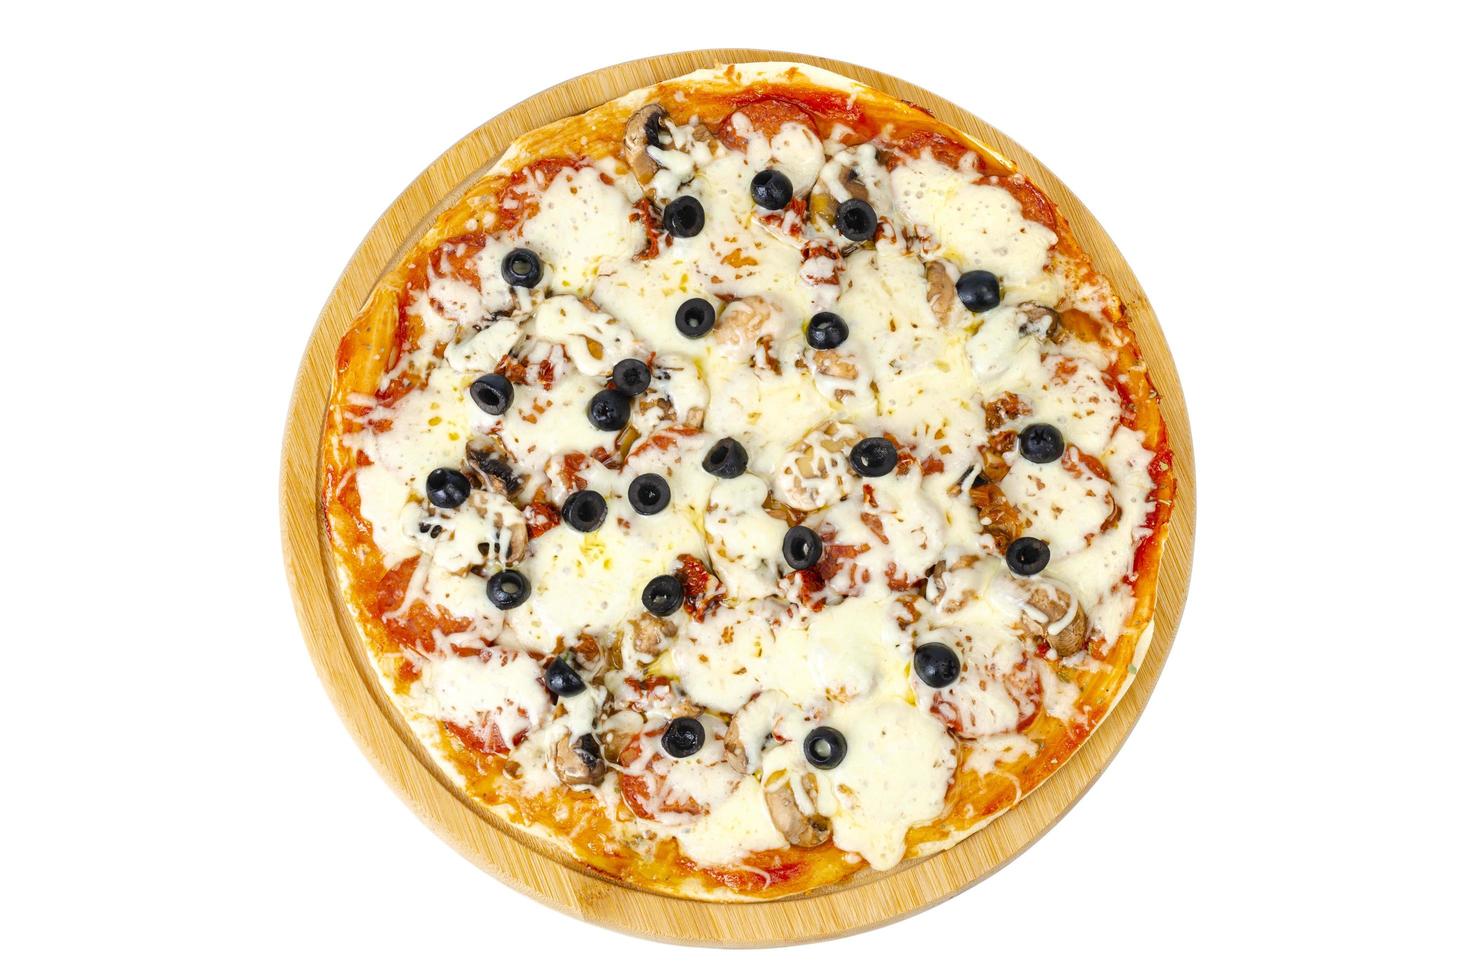 pizza fatta in casa con peperoni, funghi, mozzarella e olive. foto in studio